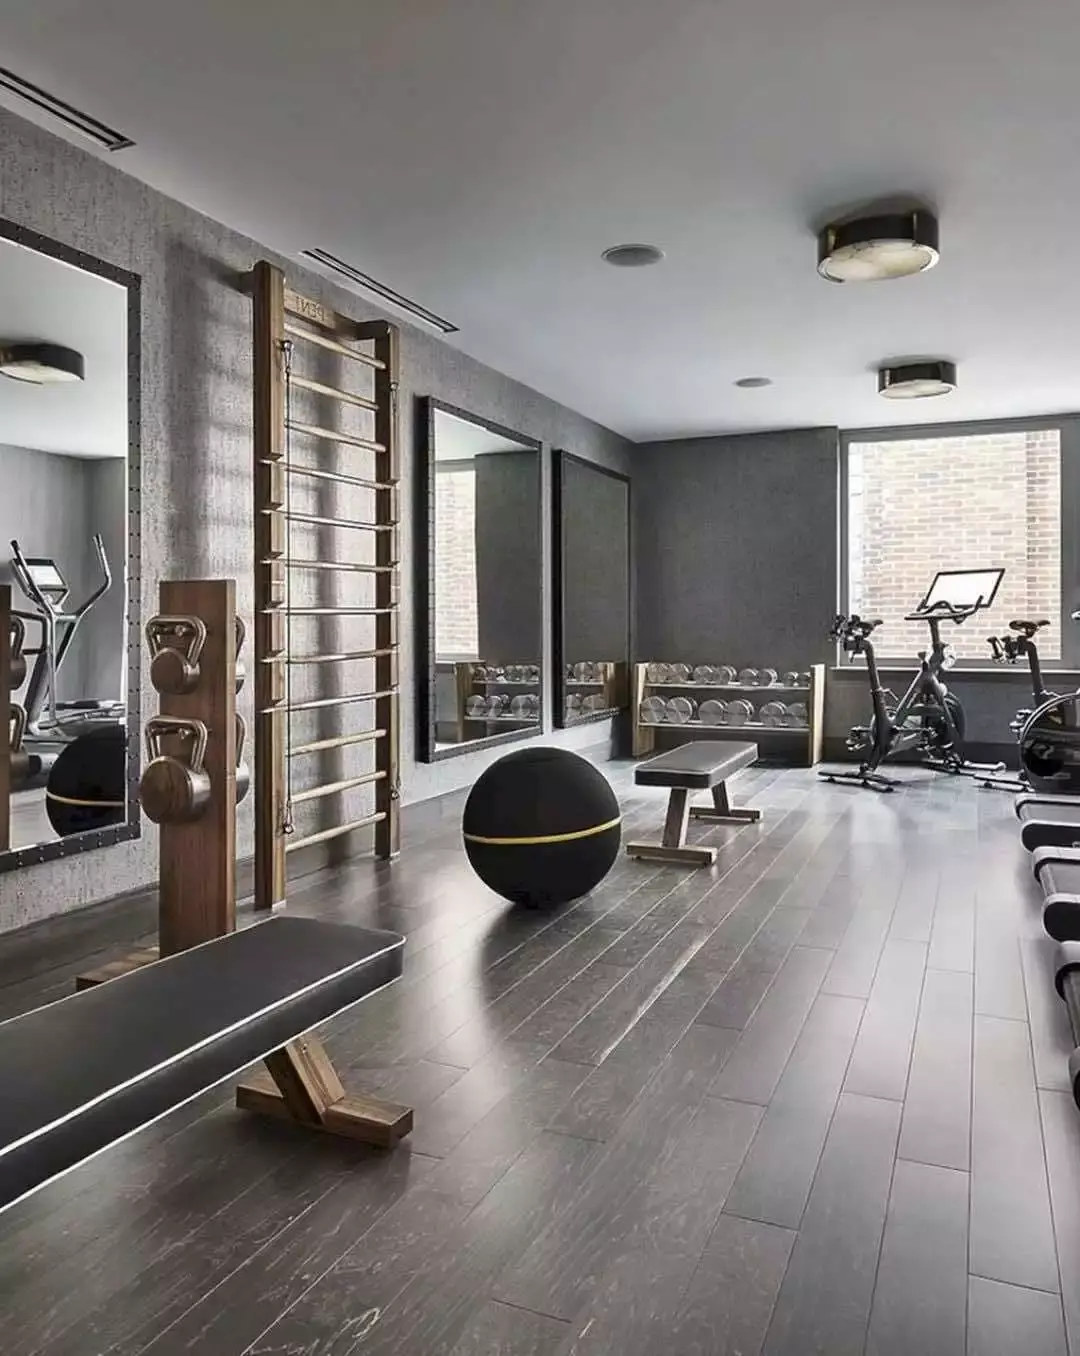 现代健身房全景 - 效果图交流区-建E室内设计网